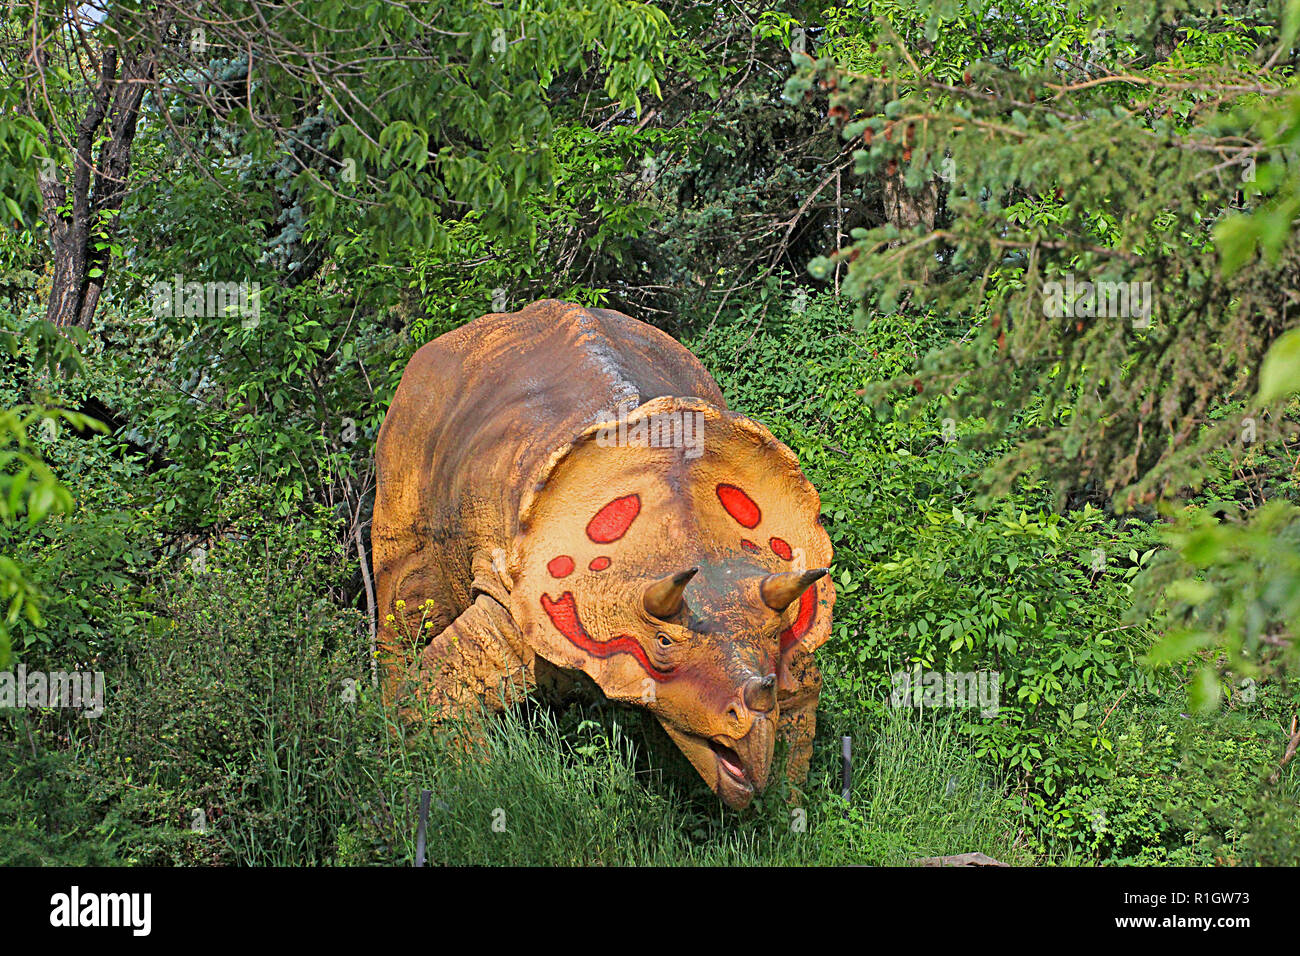 Les DINOSAURES - reptiles éteints Banque D'Images